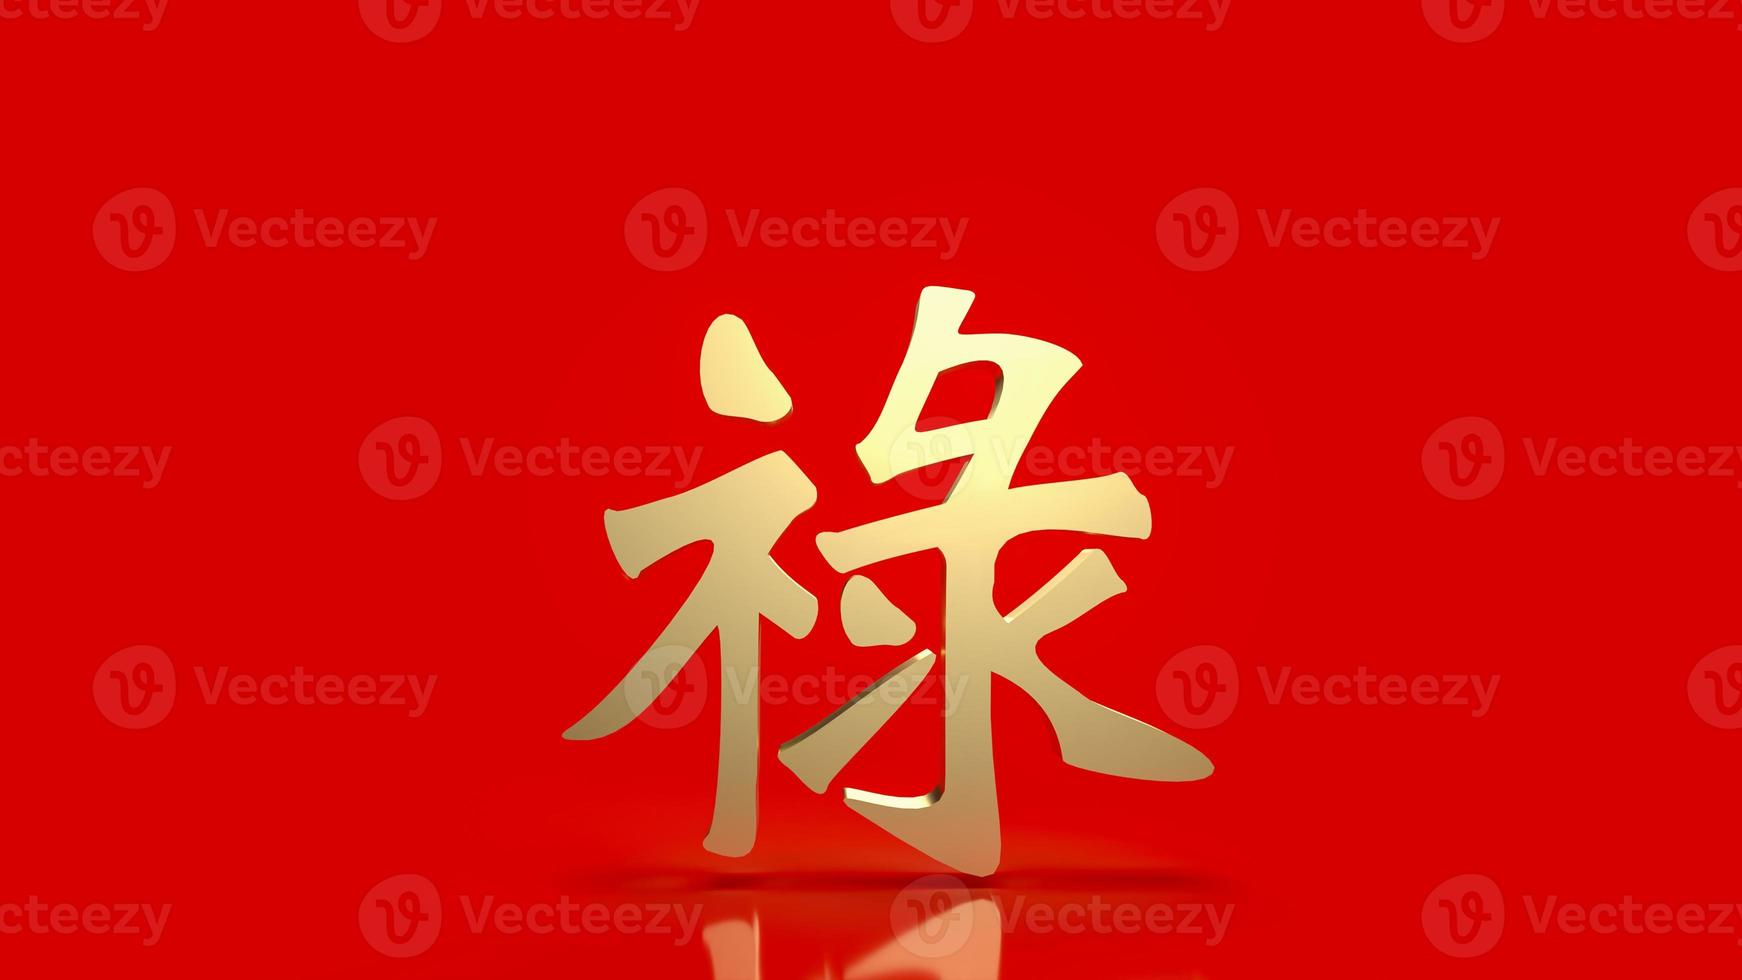 le texte chanceux chinois en or lu signifie bonne chance, richesse et longue vie pour la célébration ou le concept du nouvel an rendu 3d photo